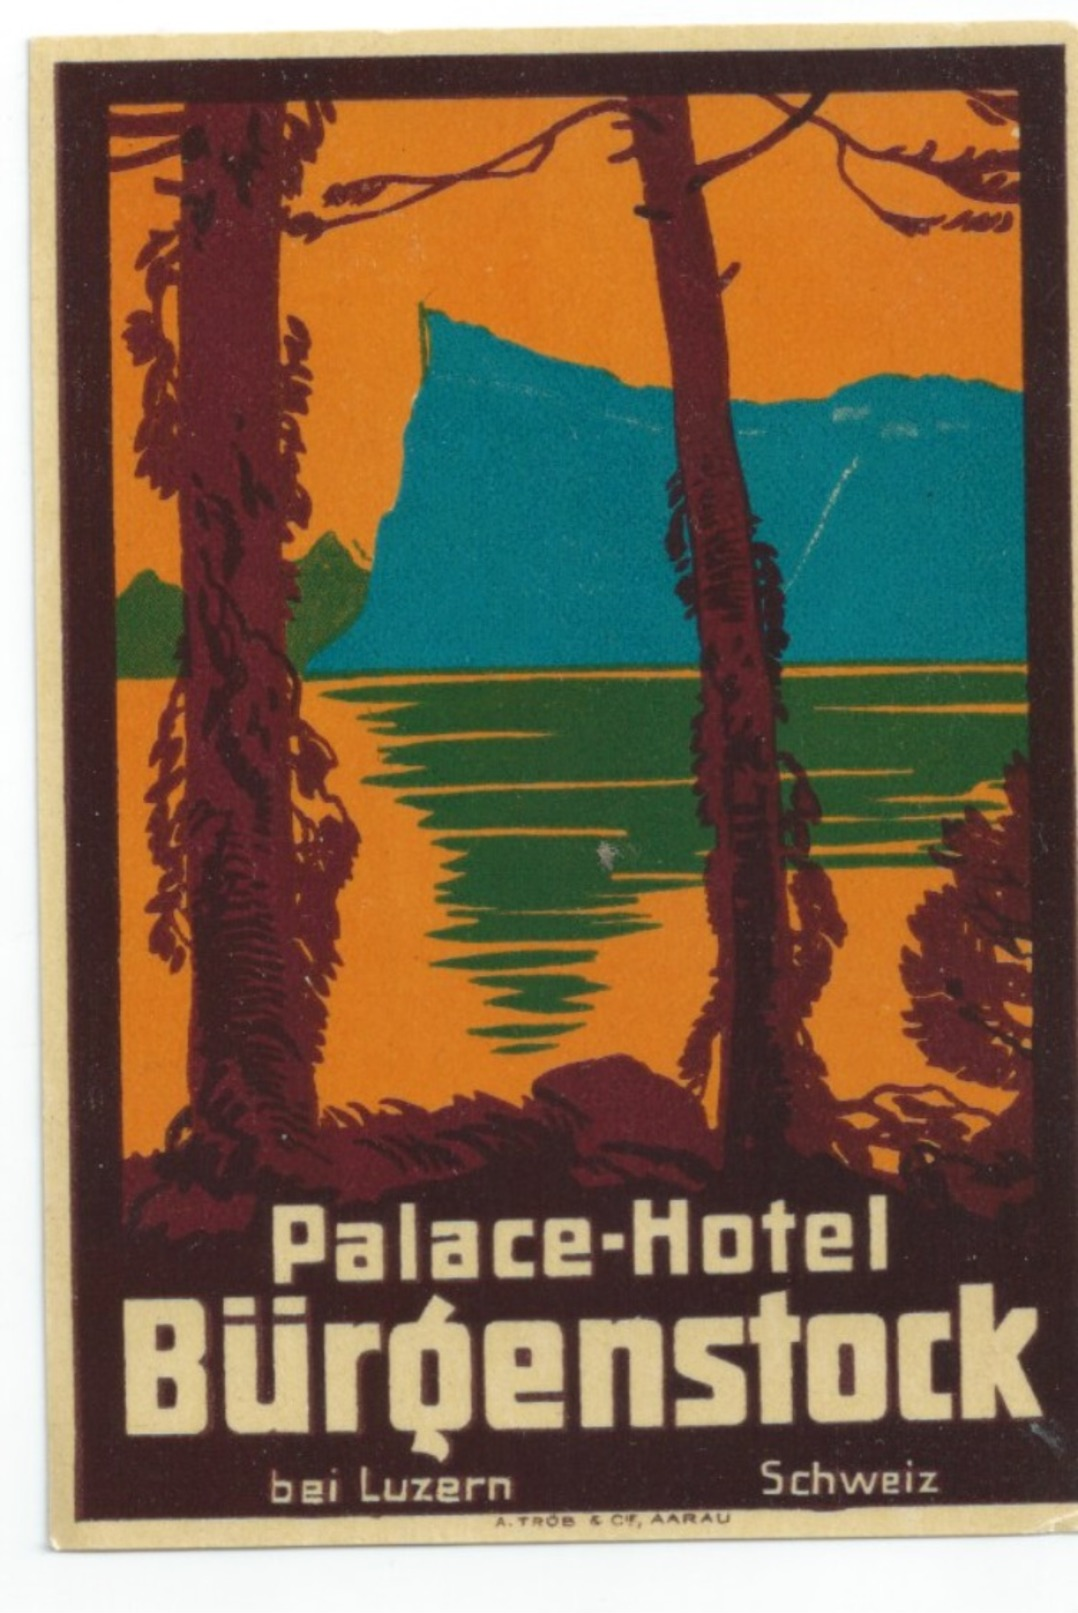 SUISSE - BURGENSTOCK  - Luggage Label étiquette - PALACE HOTEL  - (75X110 Mm) - Etiquettes D'hotels